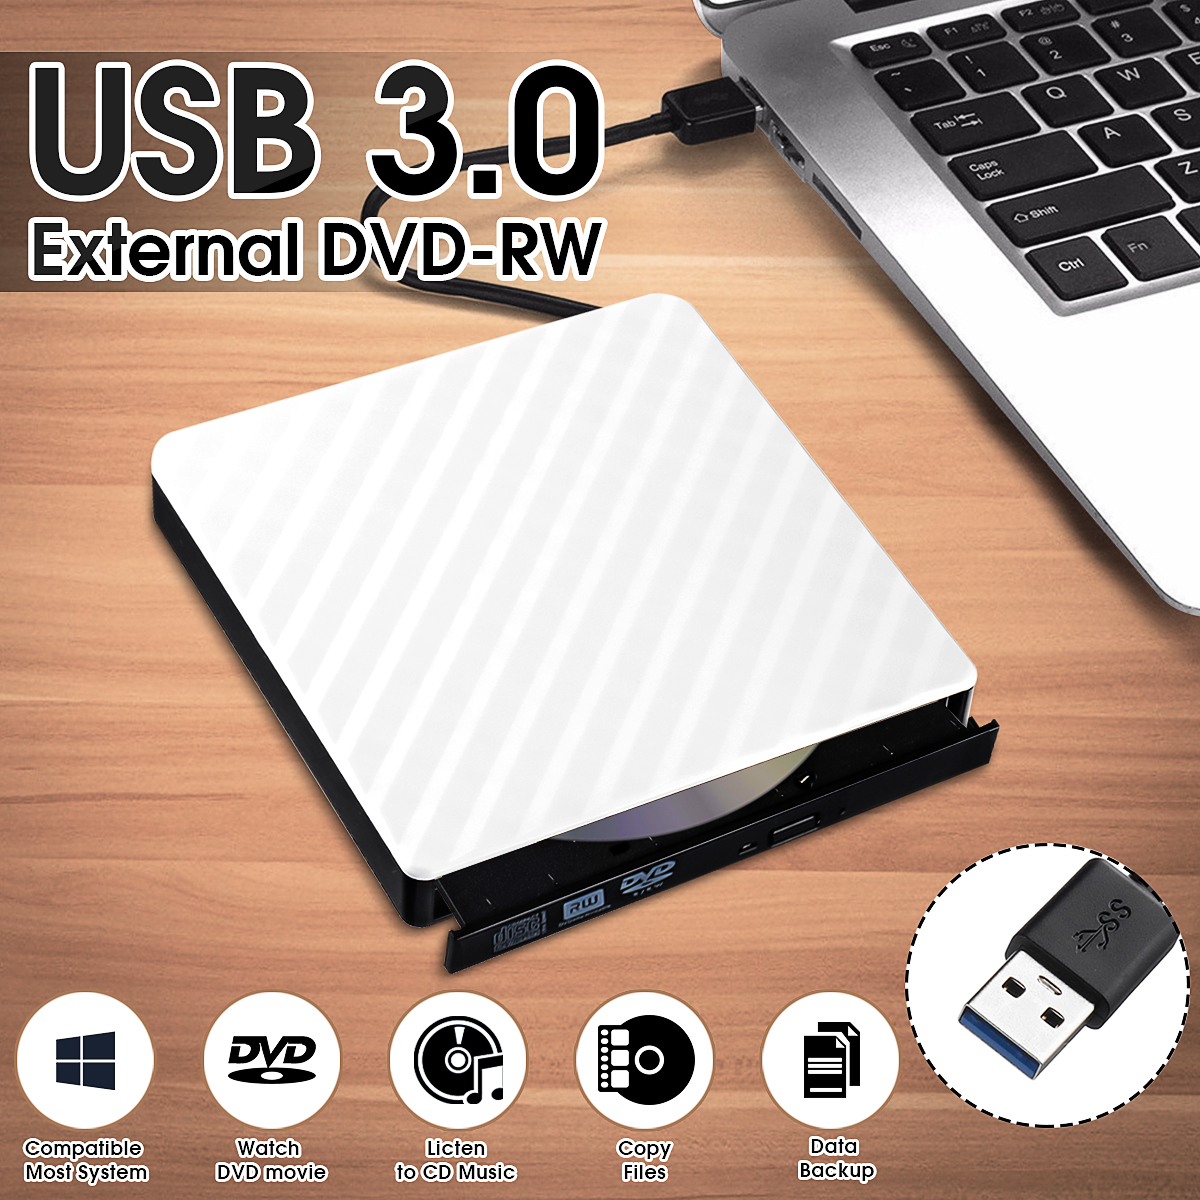 Lecteur de CD DVD externe USB 3.0, graveur de DVD/CD RW externe portable  mince pour ordinateur portable, ordinateur portable, ordinateur de bureau,  Macbook Pro, Macbook Air 